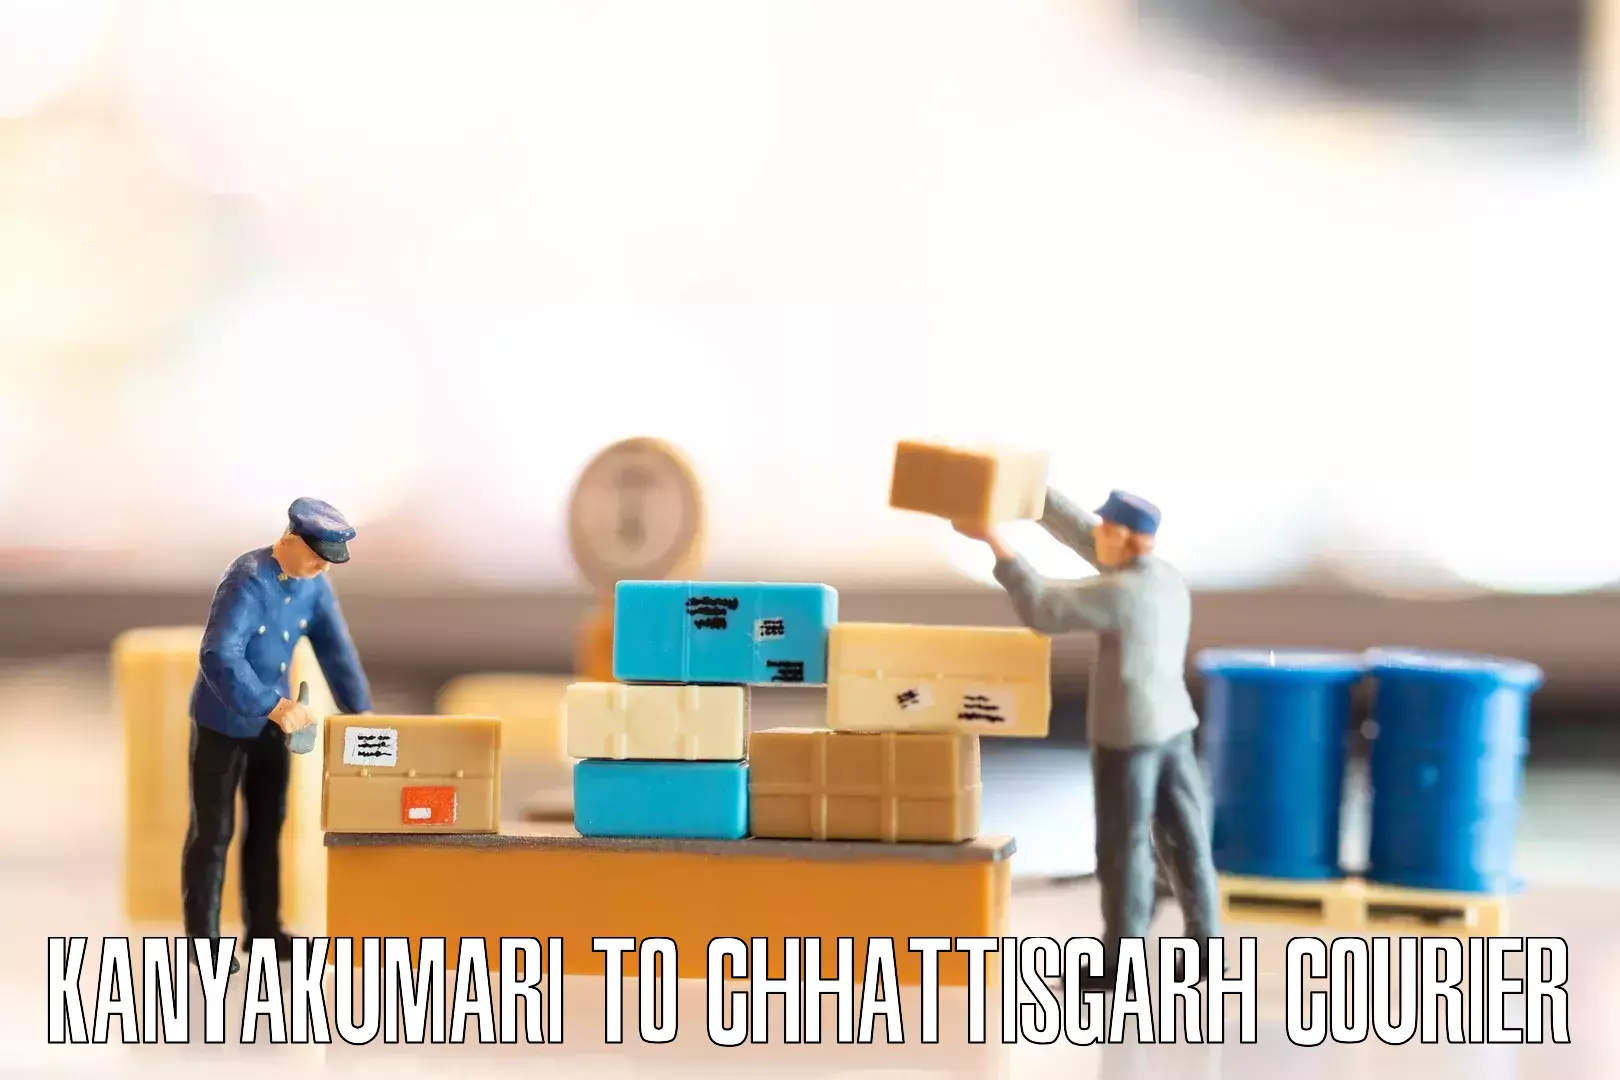 Professional furniture movers Kanyakumari to Patna Chhattisgarh